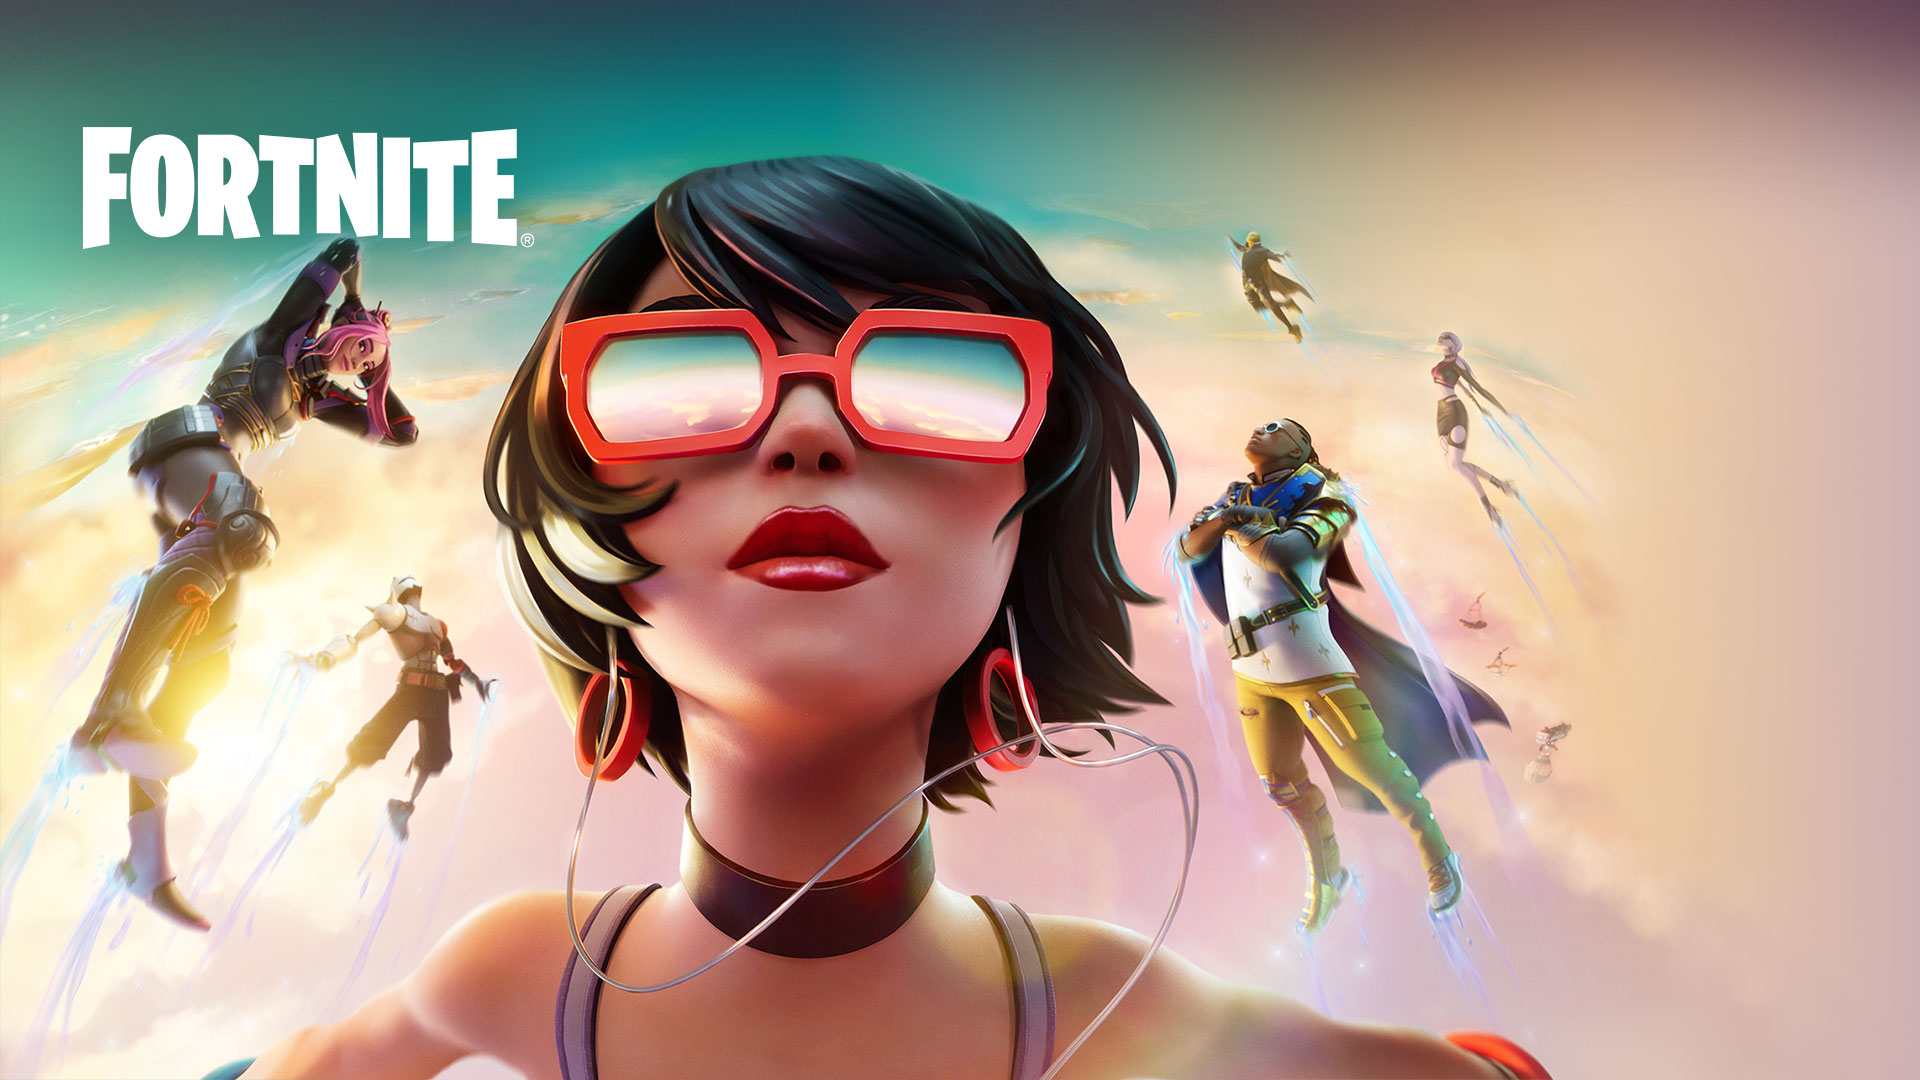 Fortnite, девушка в красных солнцезащитных очках плывет в облаках с другими персонажами на фоне неба пастельных тонов.